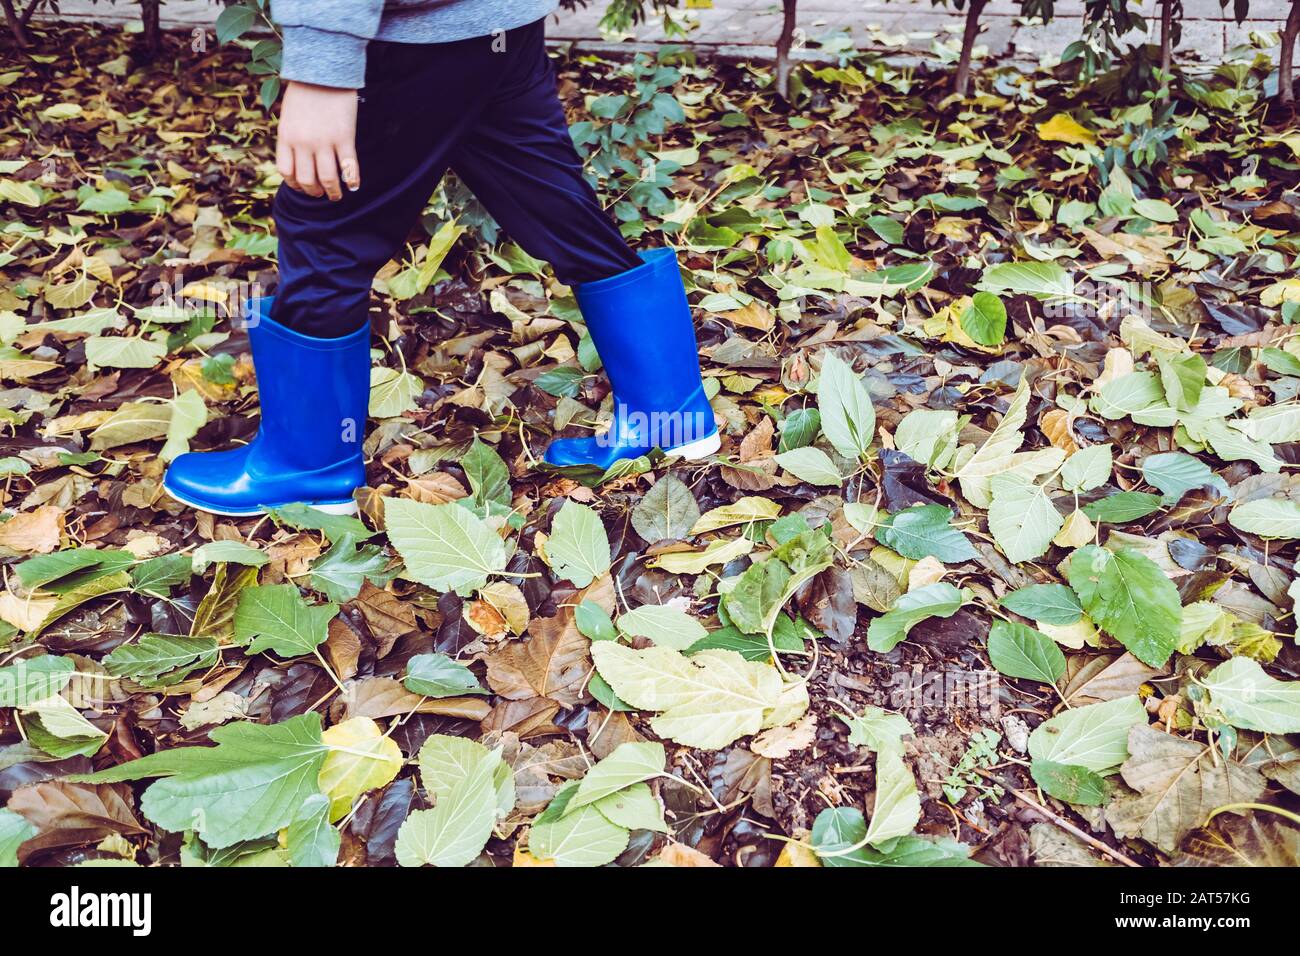 Un garçon explore la forêt en hiver avec des bottes en caoutchouc pour protéger lui-même. Banque D'Images